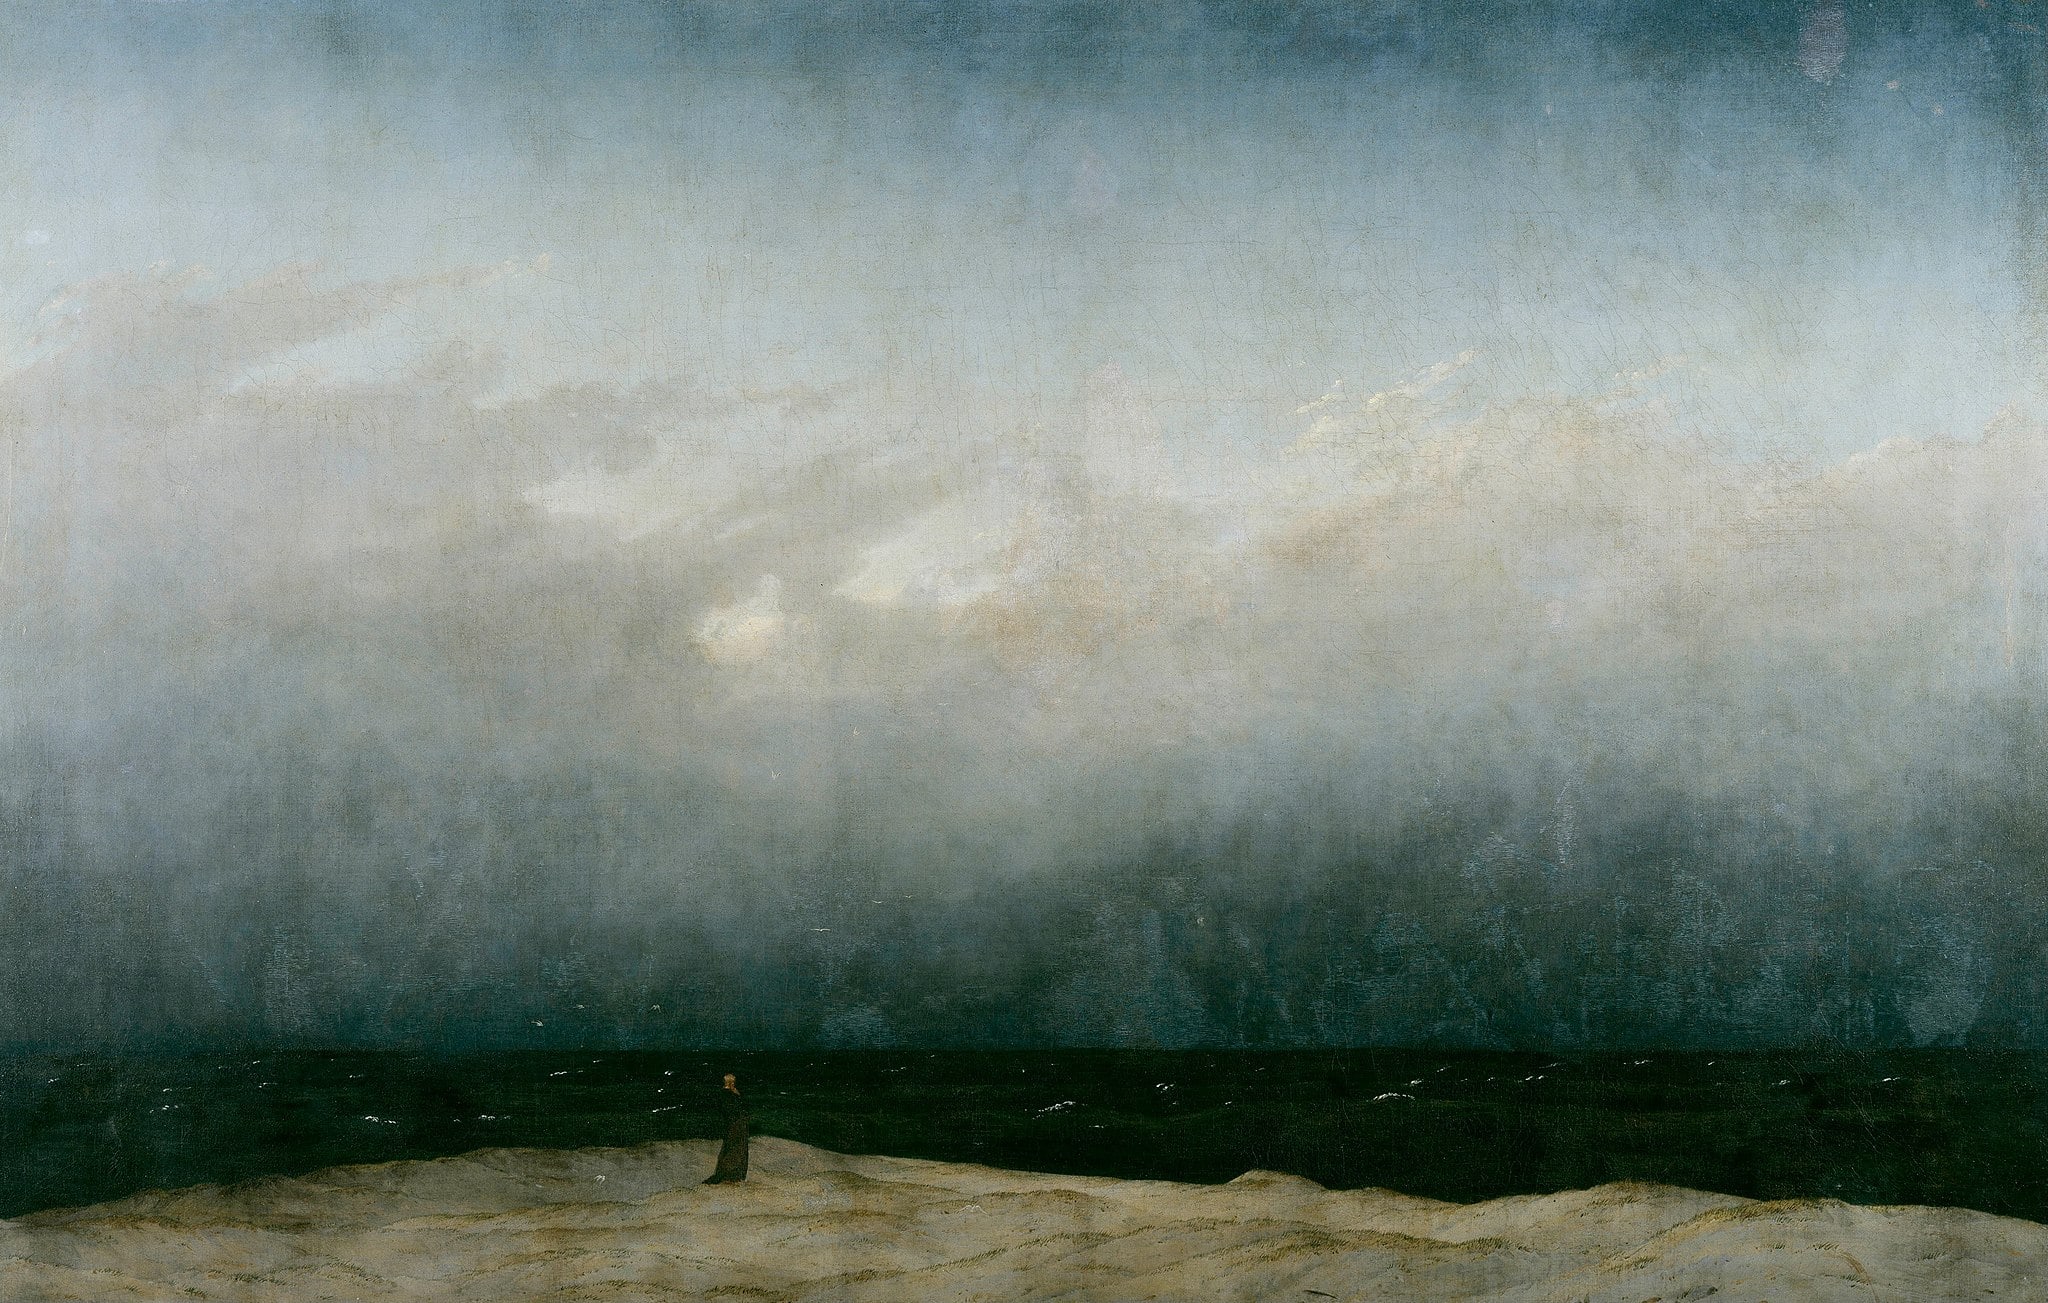 El monje junto al mar (1808 – 1810) de Caspar David Friedrich, ubicado en la Alte Nationalgalerie en Alemania